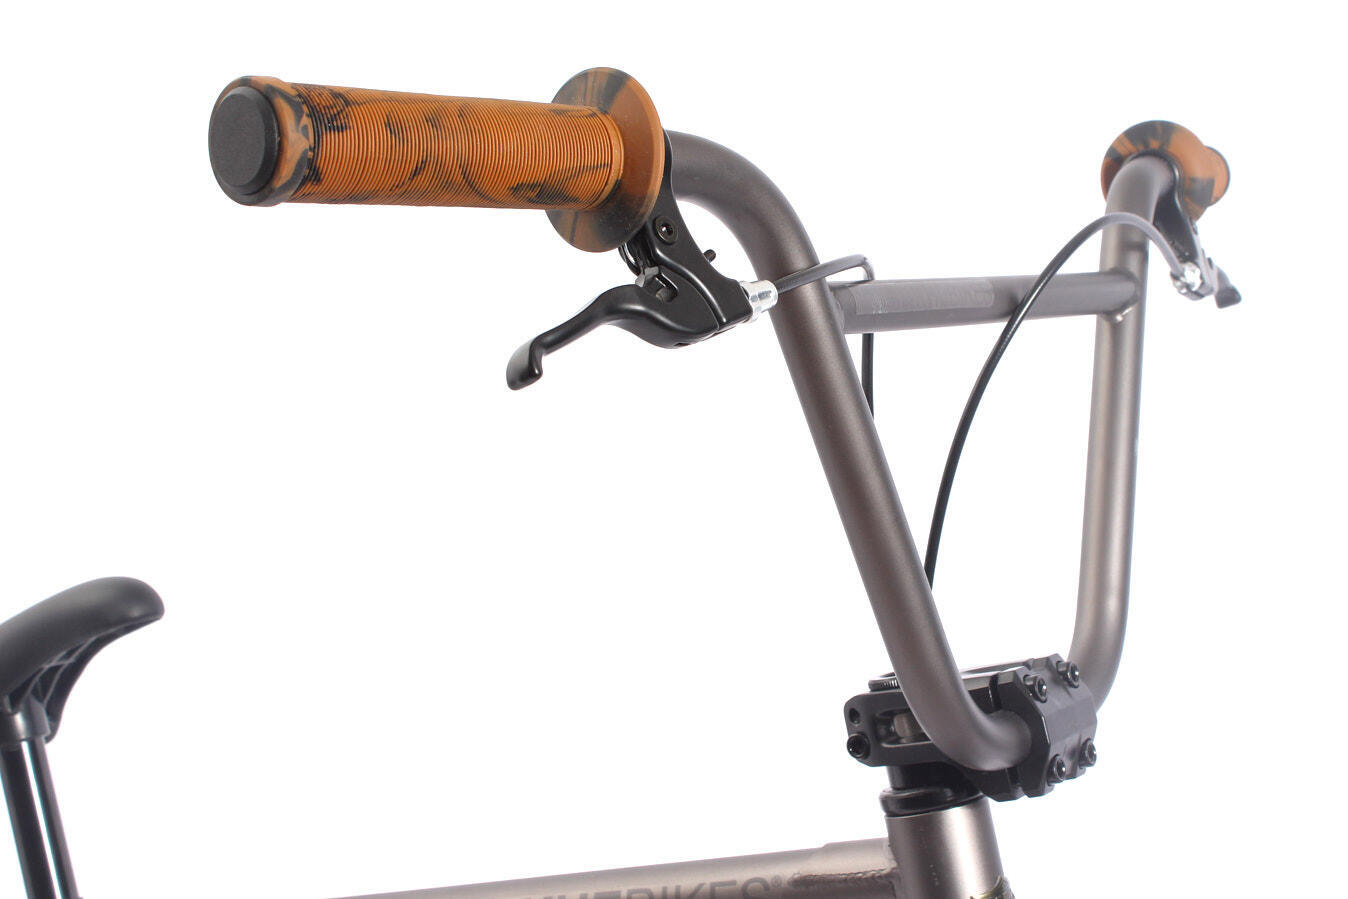 KHE Bicicletta BMX COPE AM Nero 20 Pollici brevettata Affix 360° Solo 10,9 kg! 